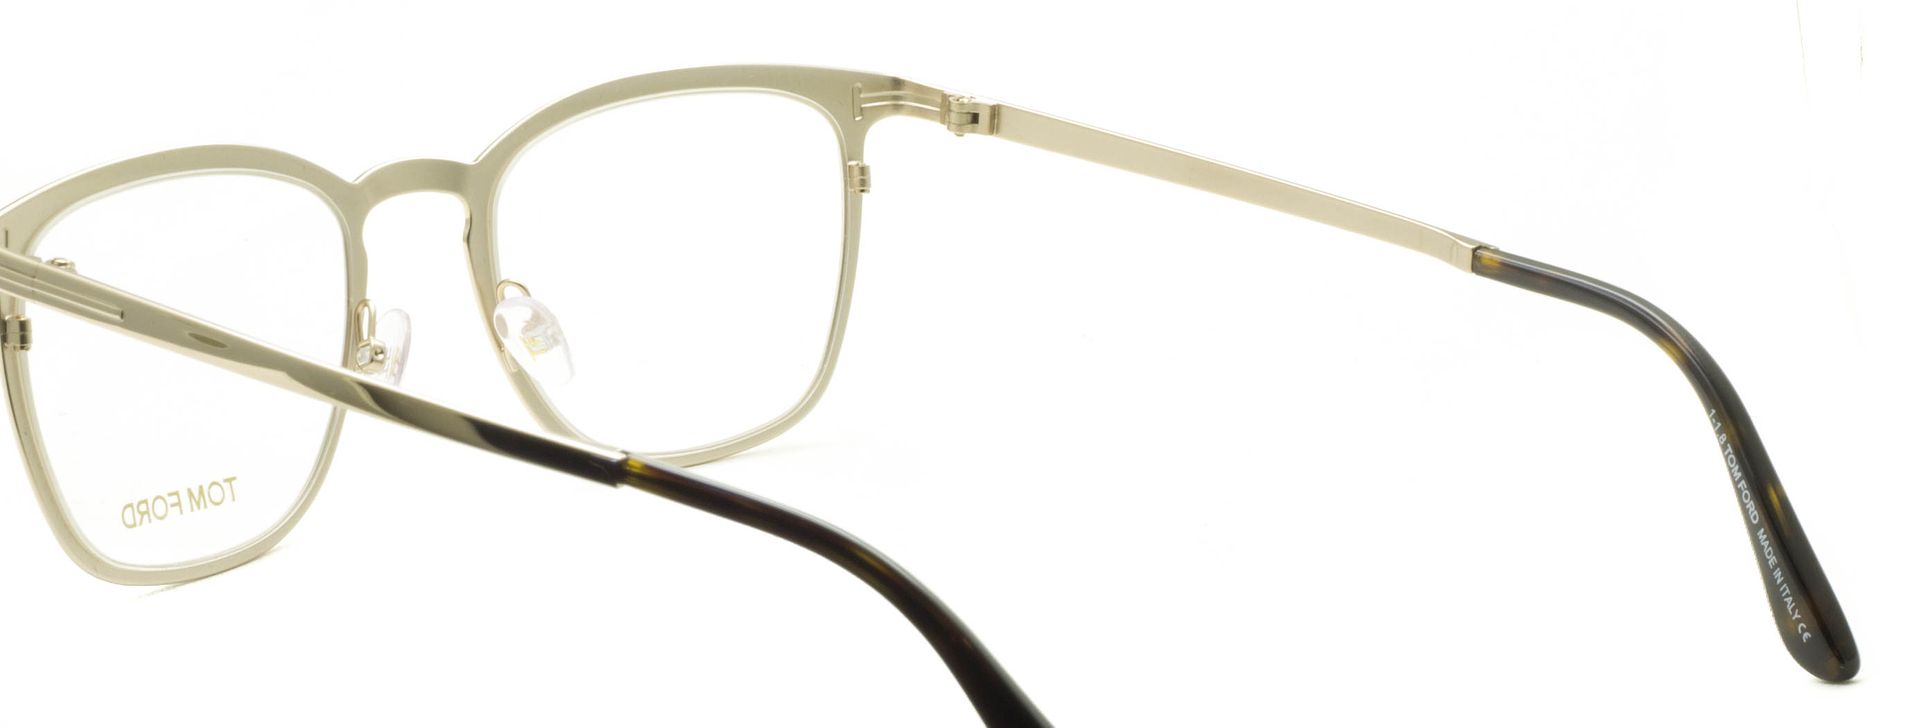 Tom Ford Tf 5464 028 Eyewear Frames Rx Optical Eyeglasses